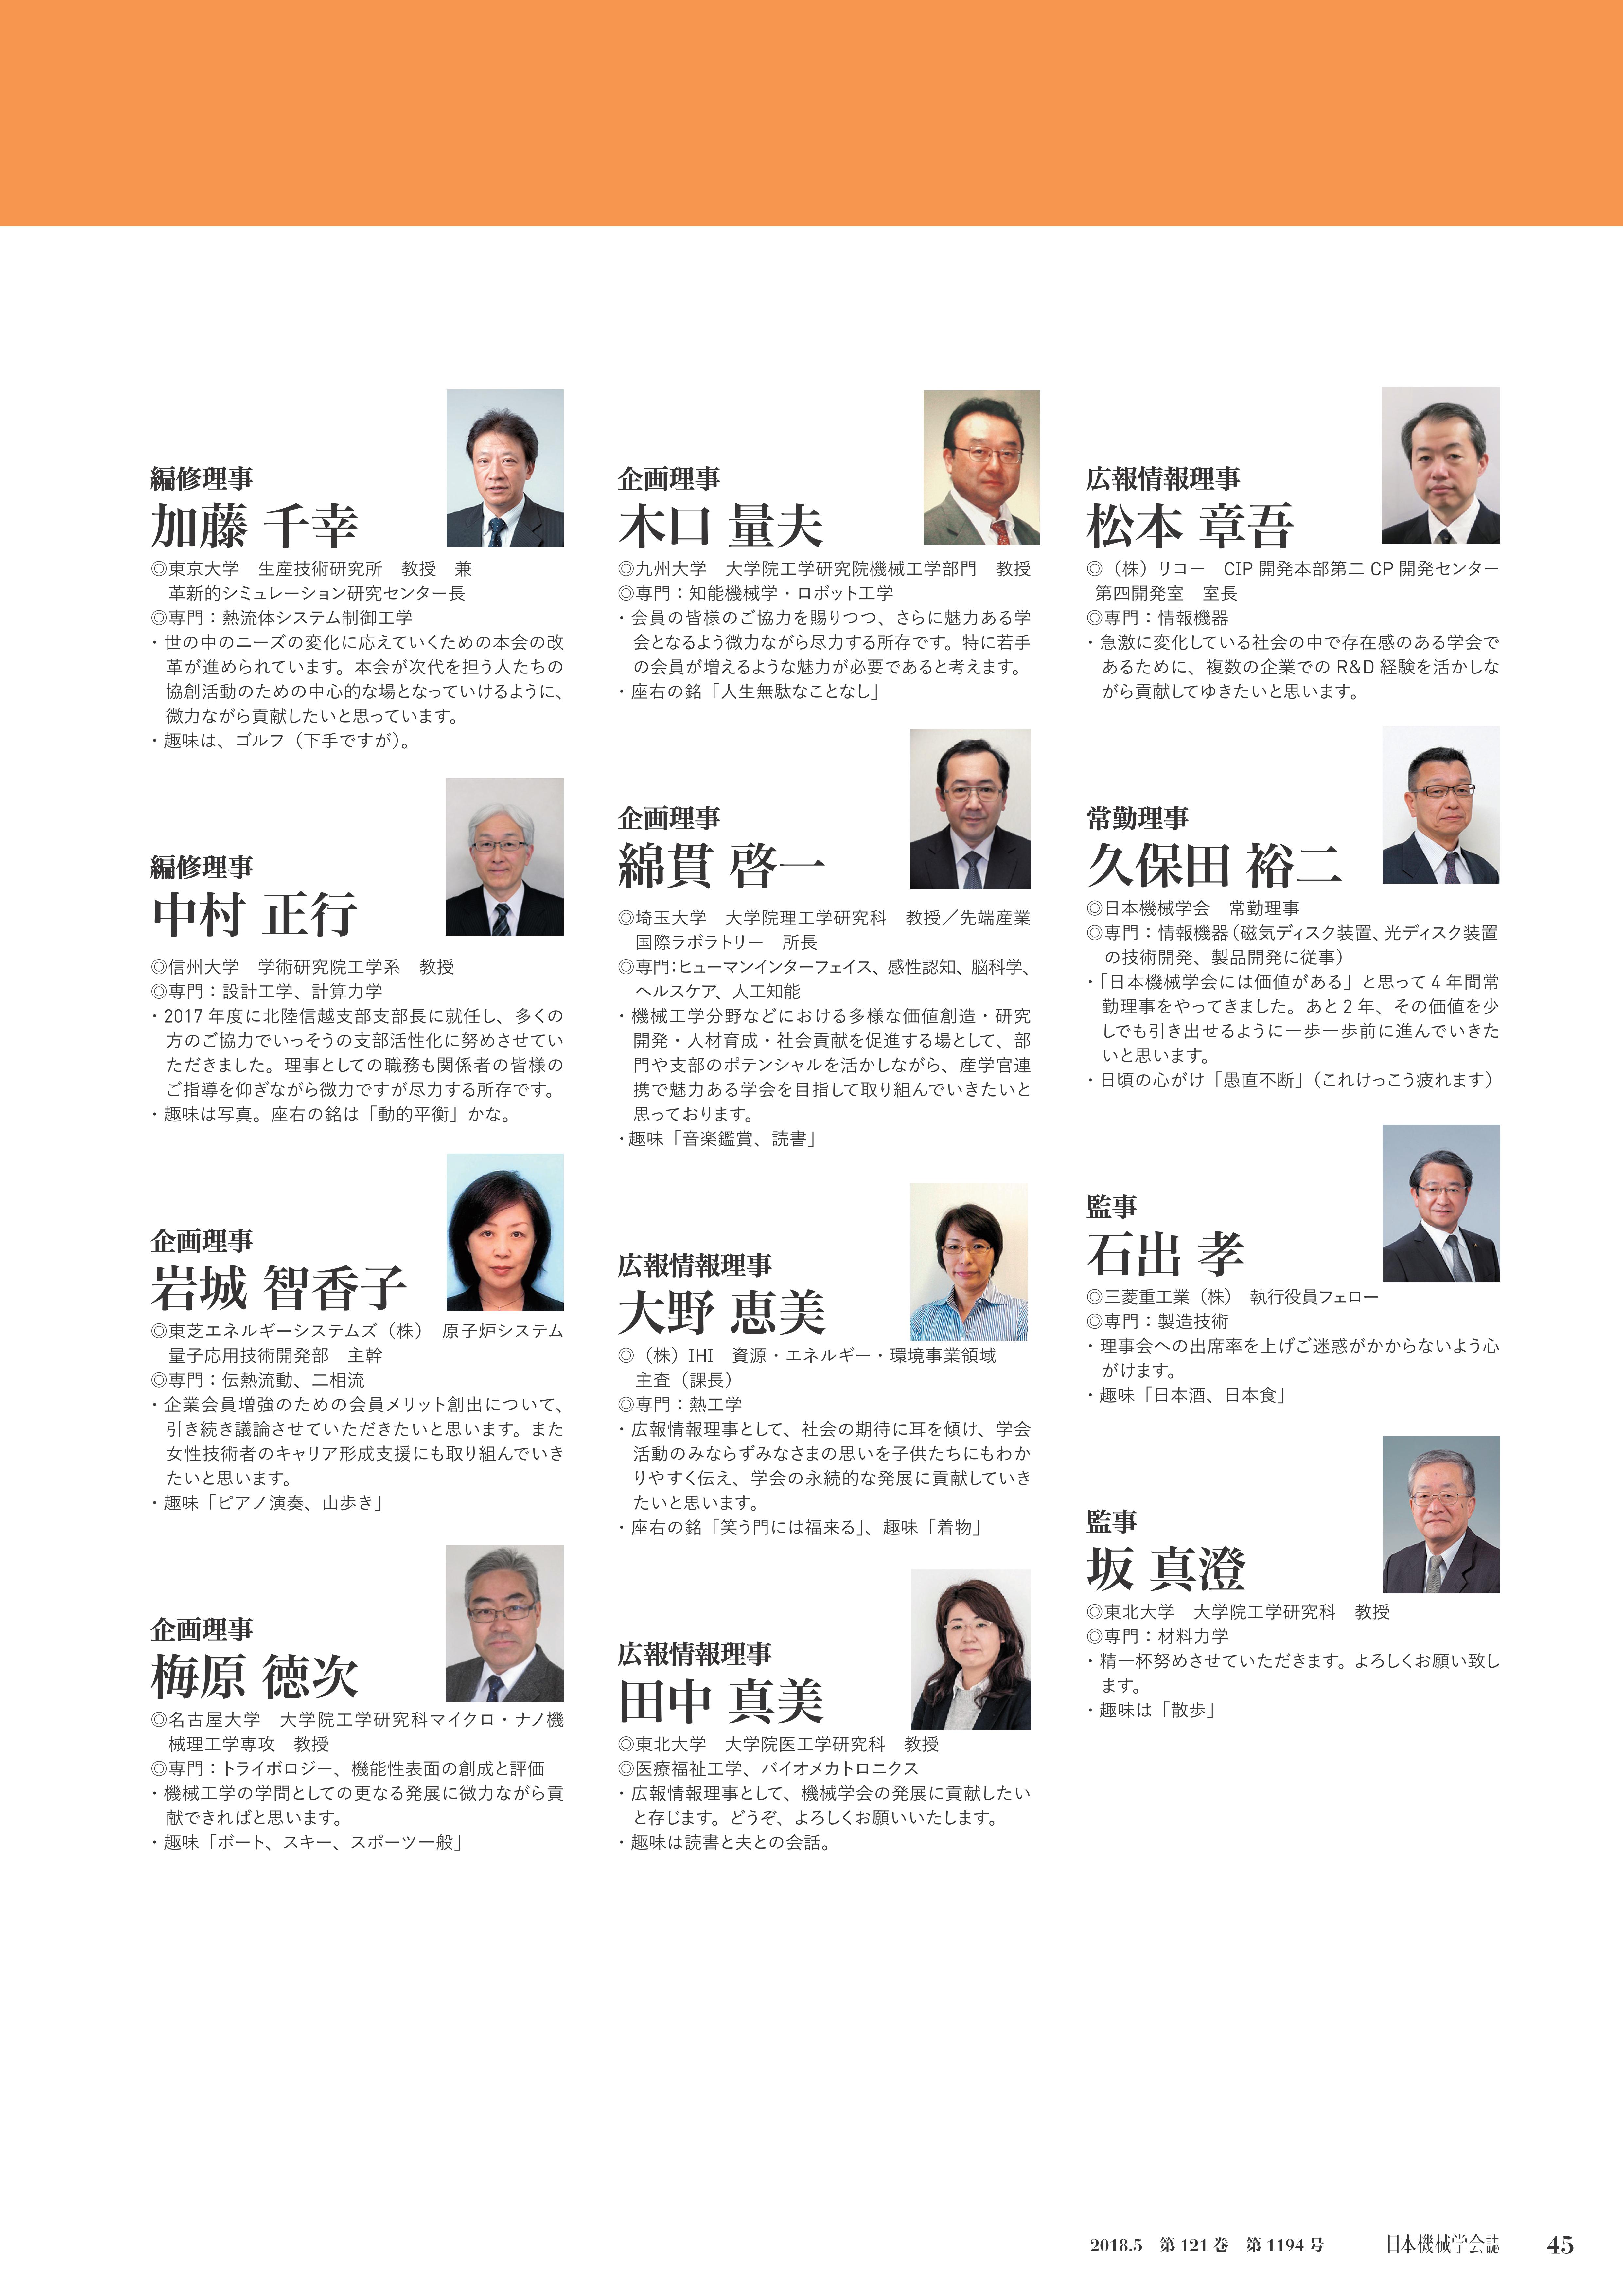 18年度運営体制 日本機械学会誌